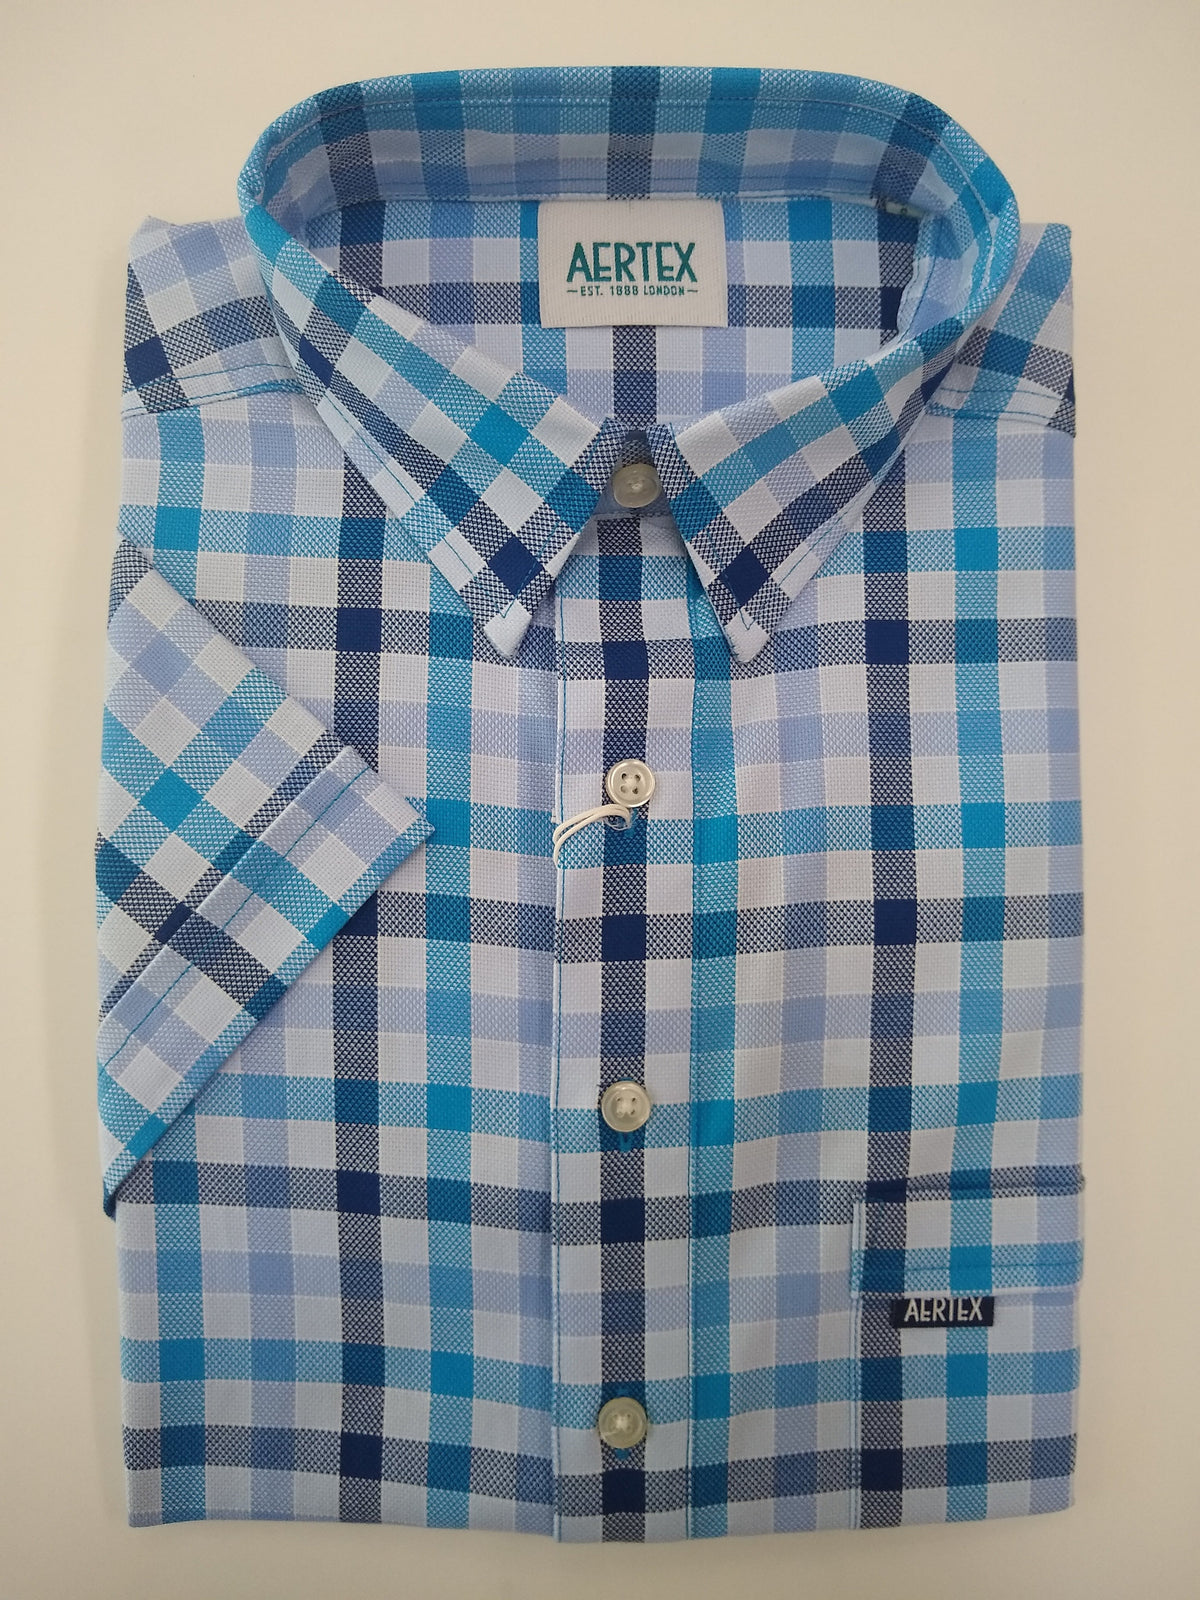 Aertex shirts